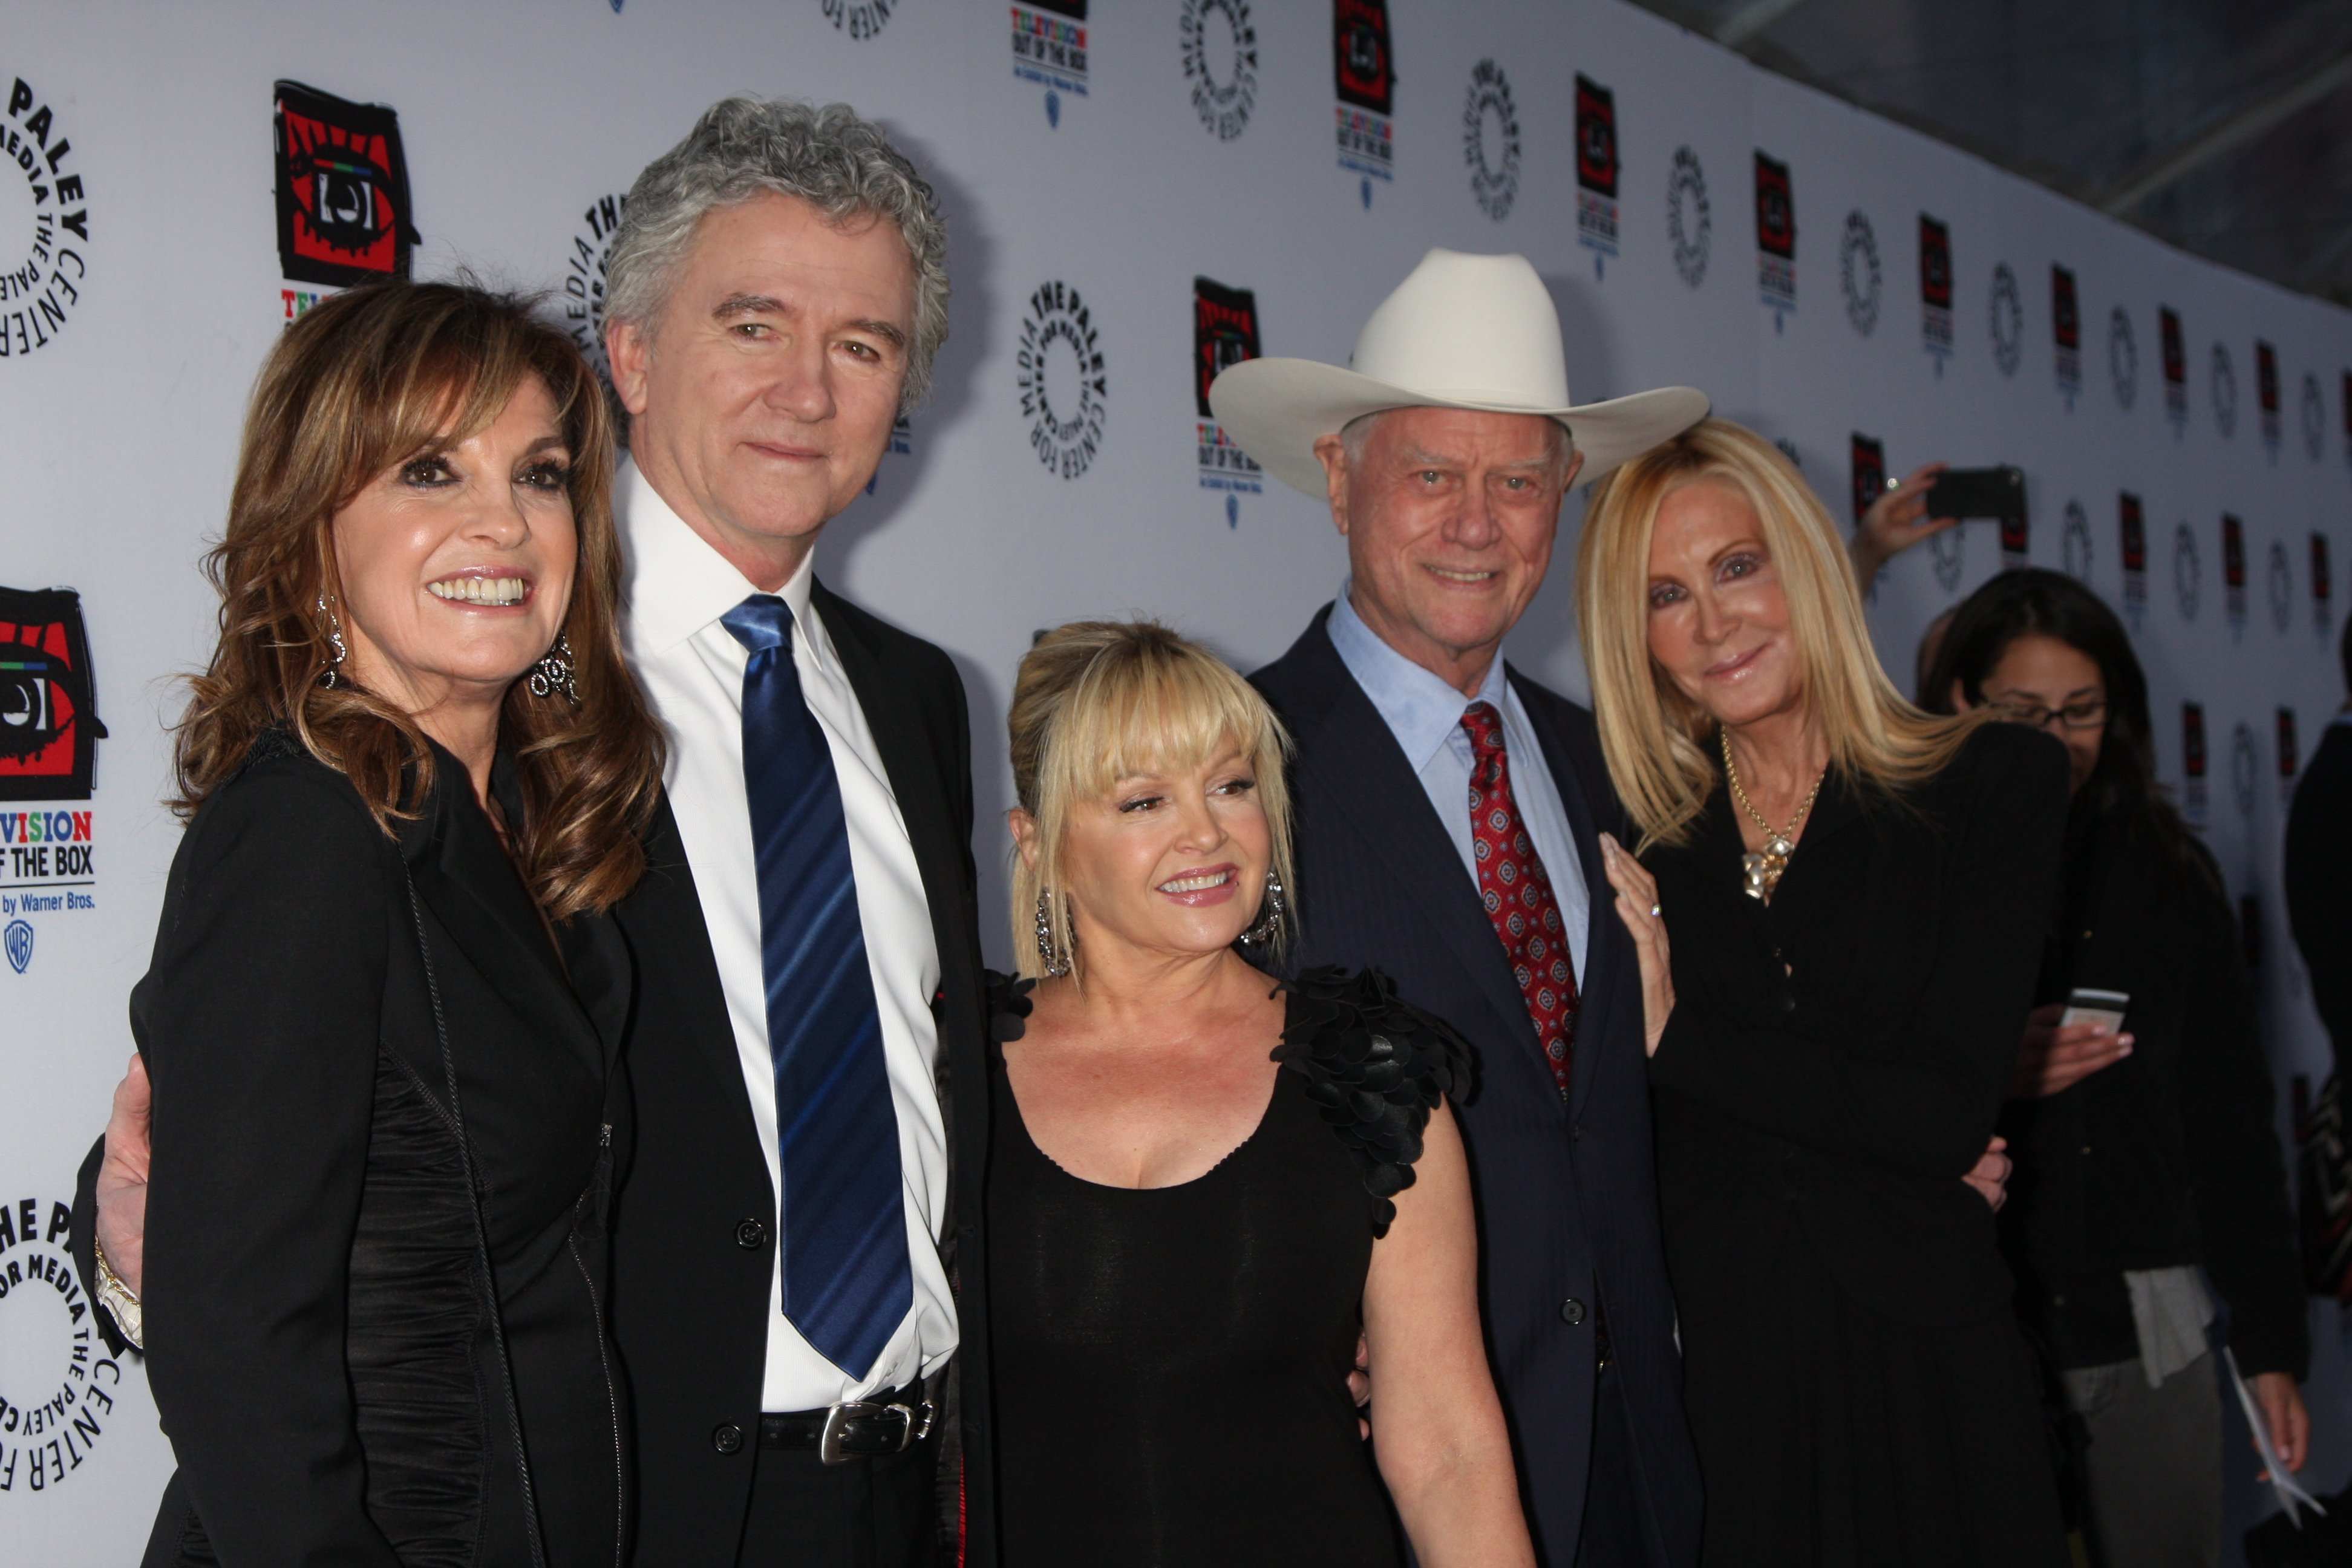 Charlene Tilton mit dem Cast von "Dallas" | Quelle: Shutterstock